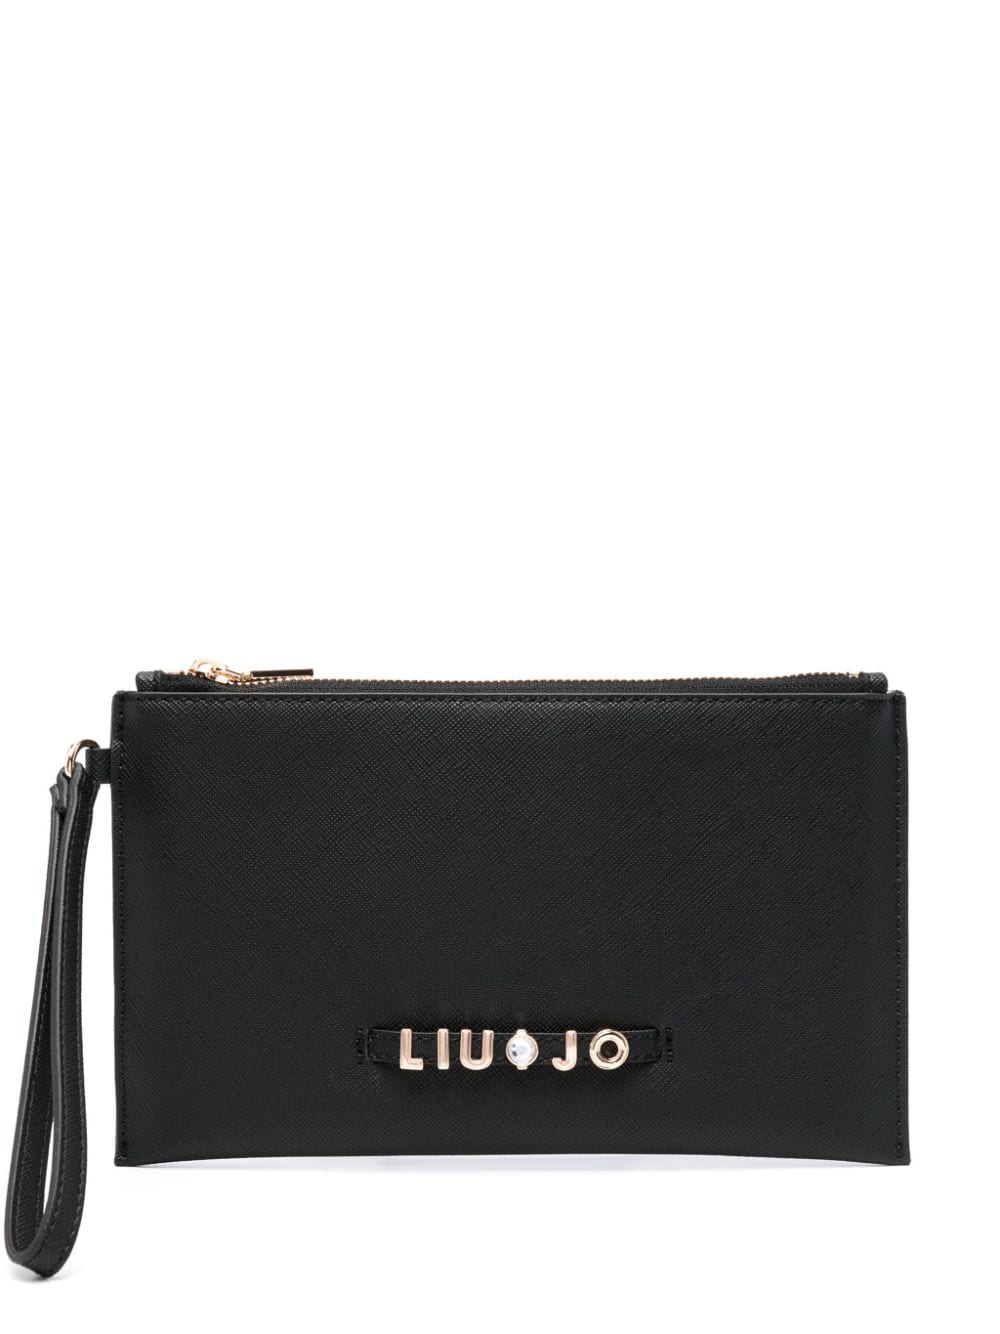 Liu •jo Logo-lettering Purse In Black